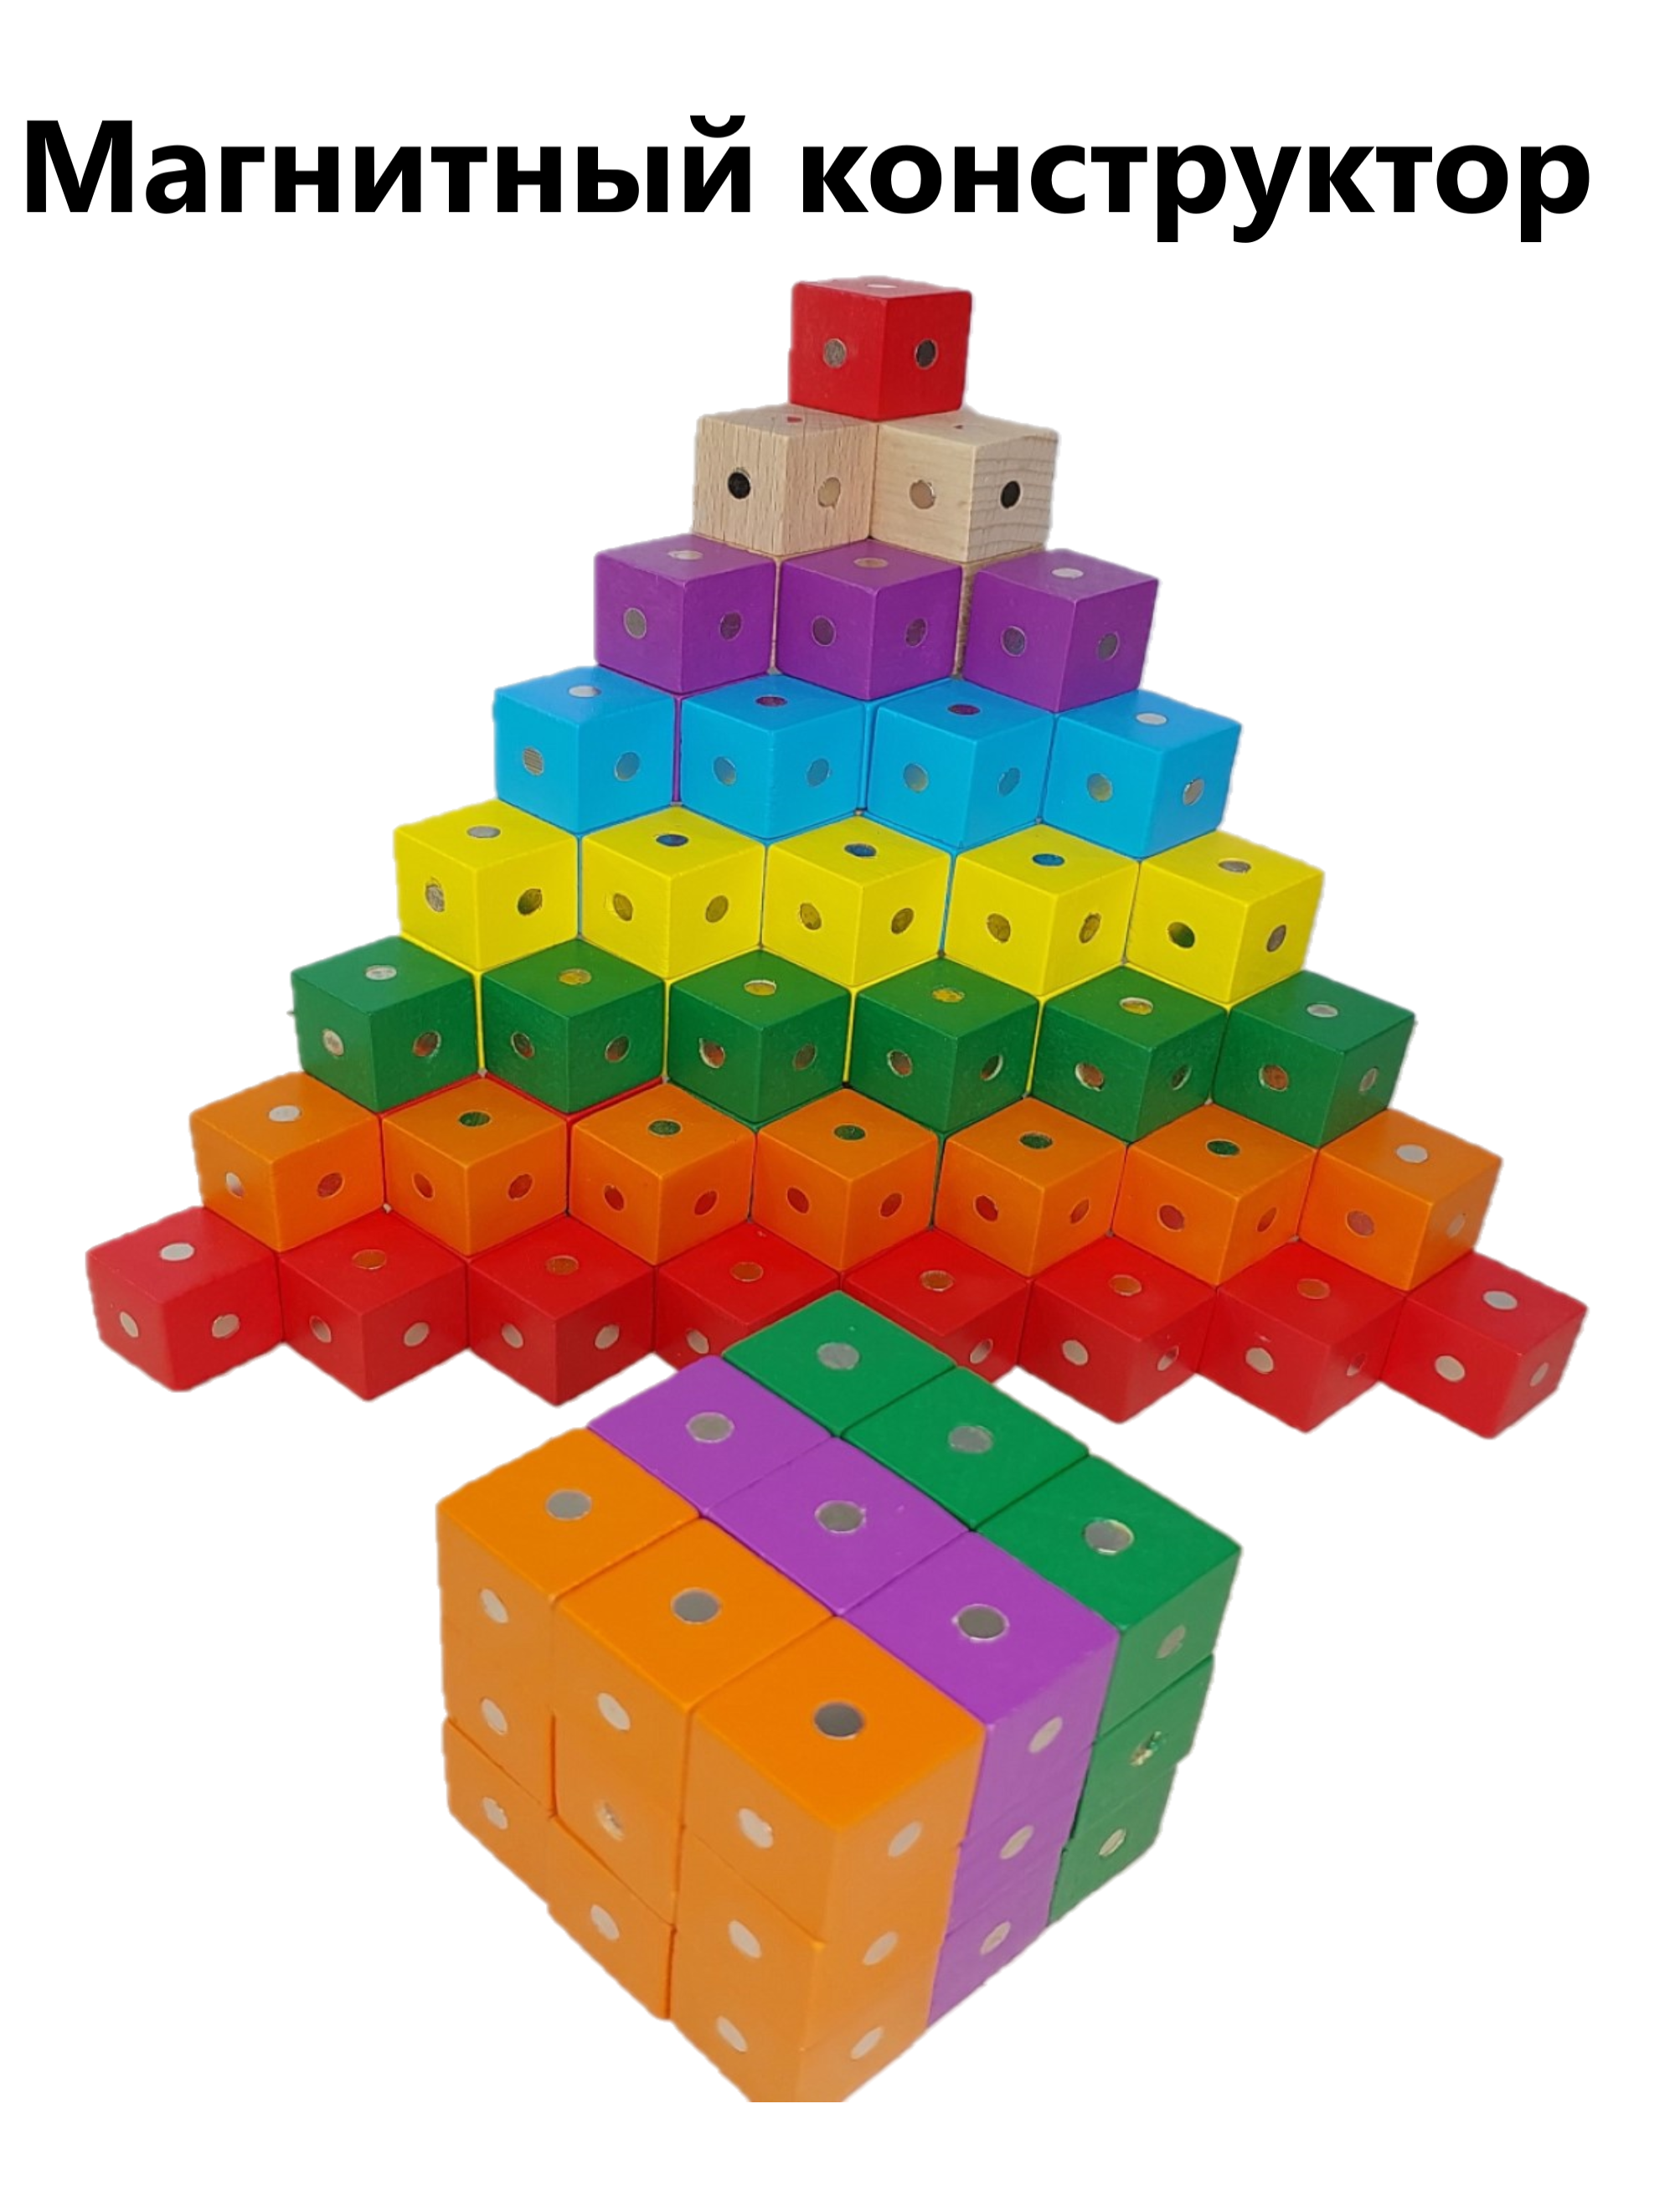 Магнитный конструктор Синий парус 3D набор деревянных кубиков, разноцветный, 70 дет